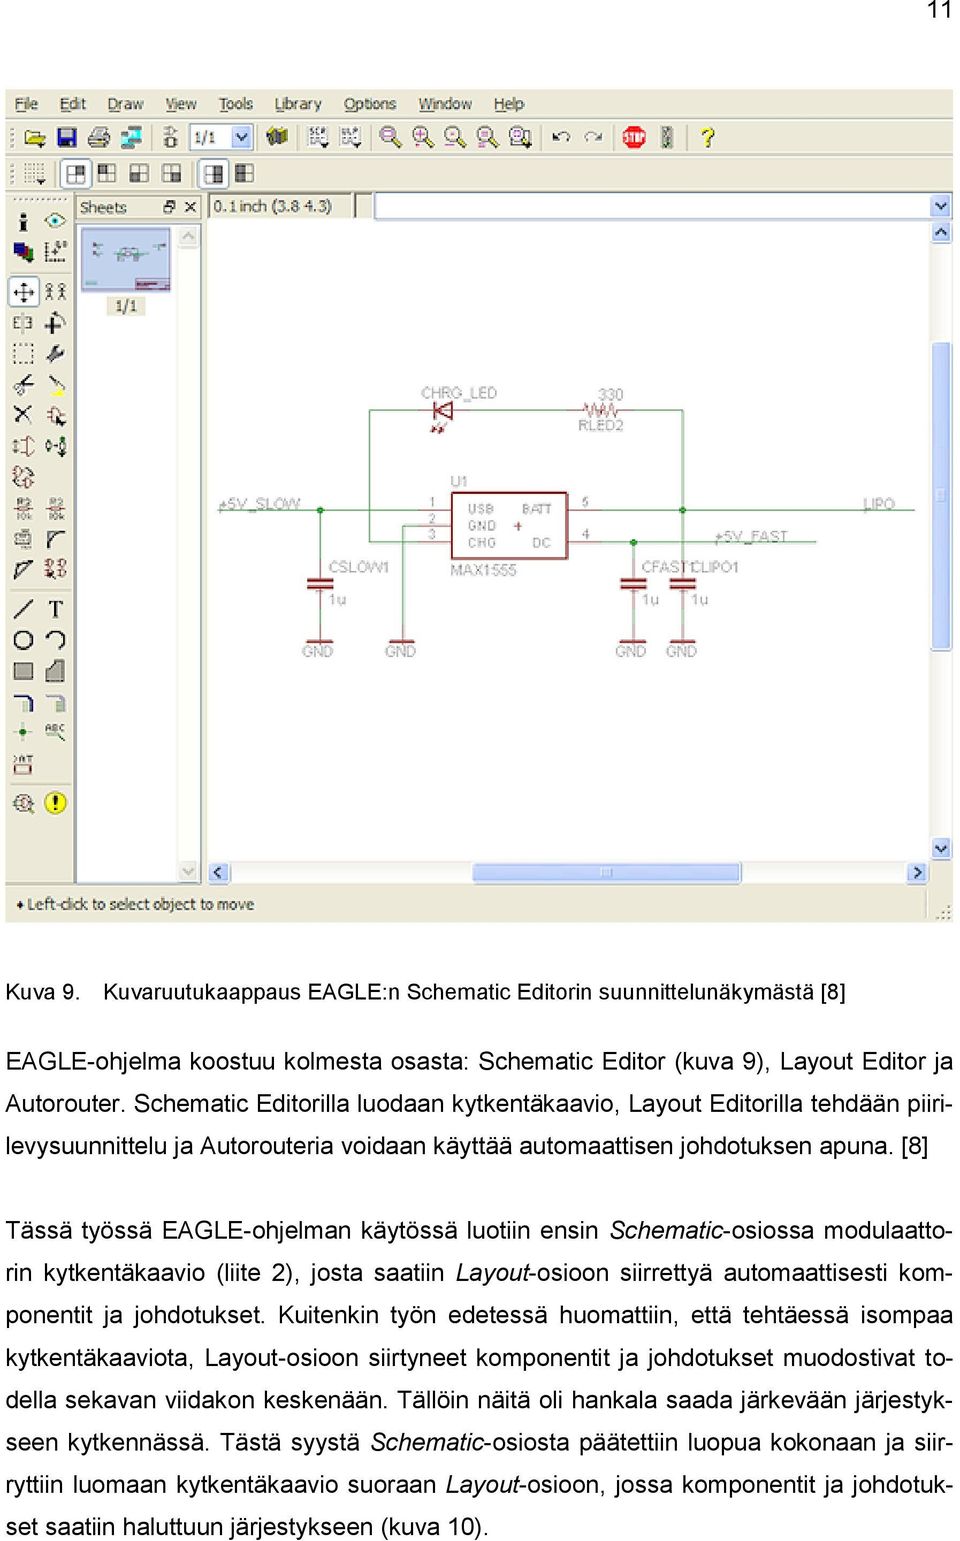 [8] Tässä työssä EAGLE-ohjelman käytössä luotiin ensin Schematic-osiossa modulaattorin kytkentäkaavio (liite 2), josta saatiin Layout-osioon siirrettyä automaattisesti komponentit ja johdotukset.